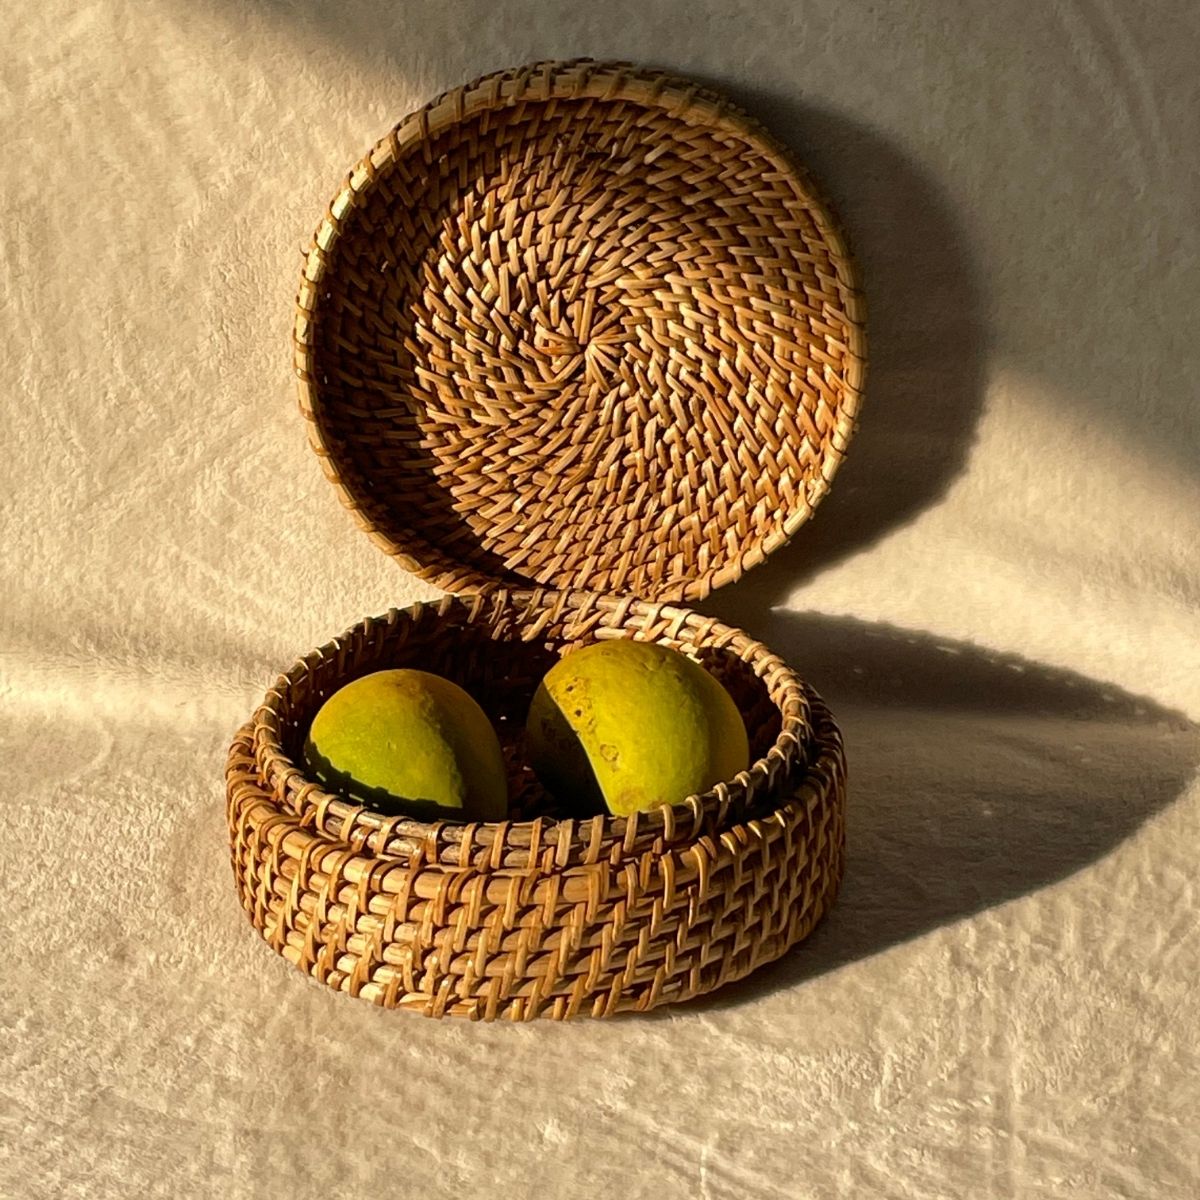 Natural Weave Cane Roti | Fruit Basket Box